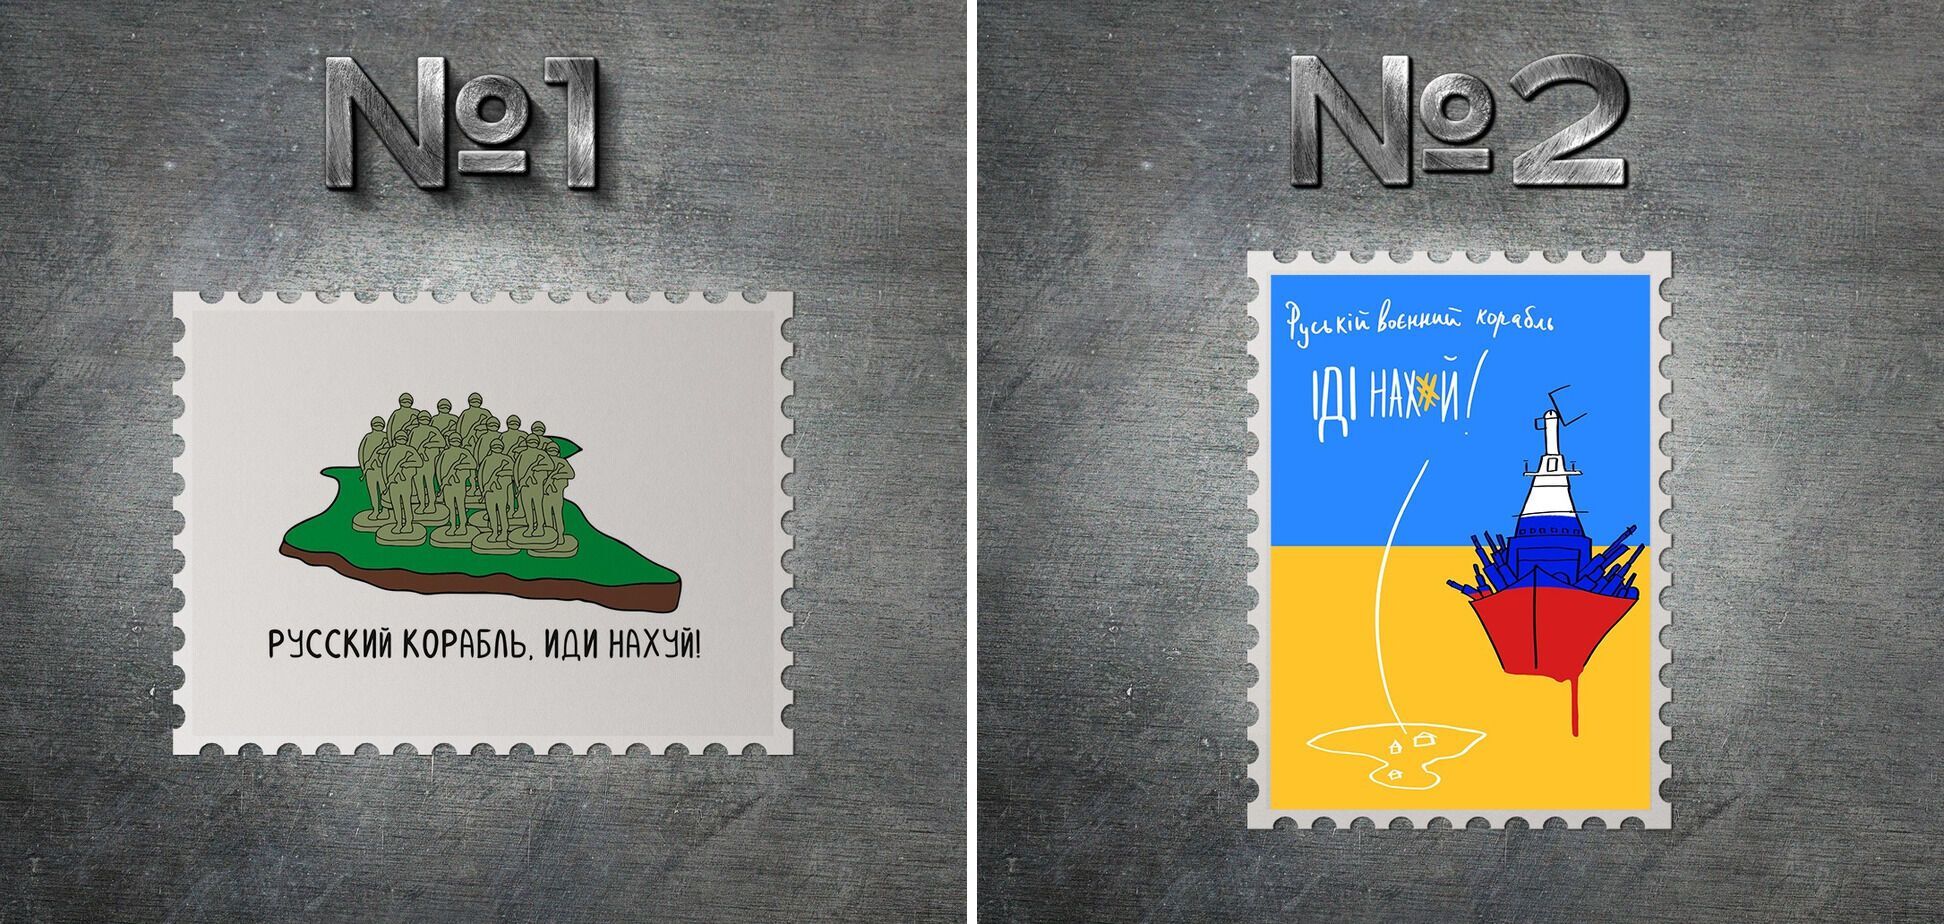 Укрпошта опублікувала ескізи поштових марок на тему "Русский военный корабль, иди на*уй". Фото